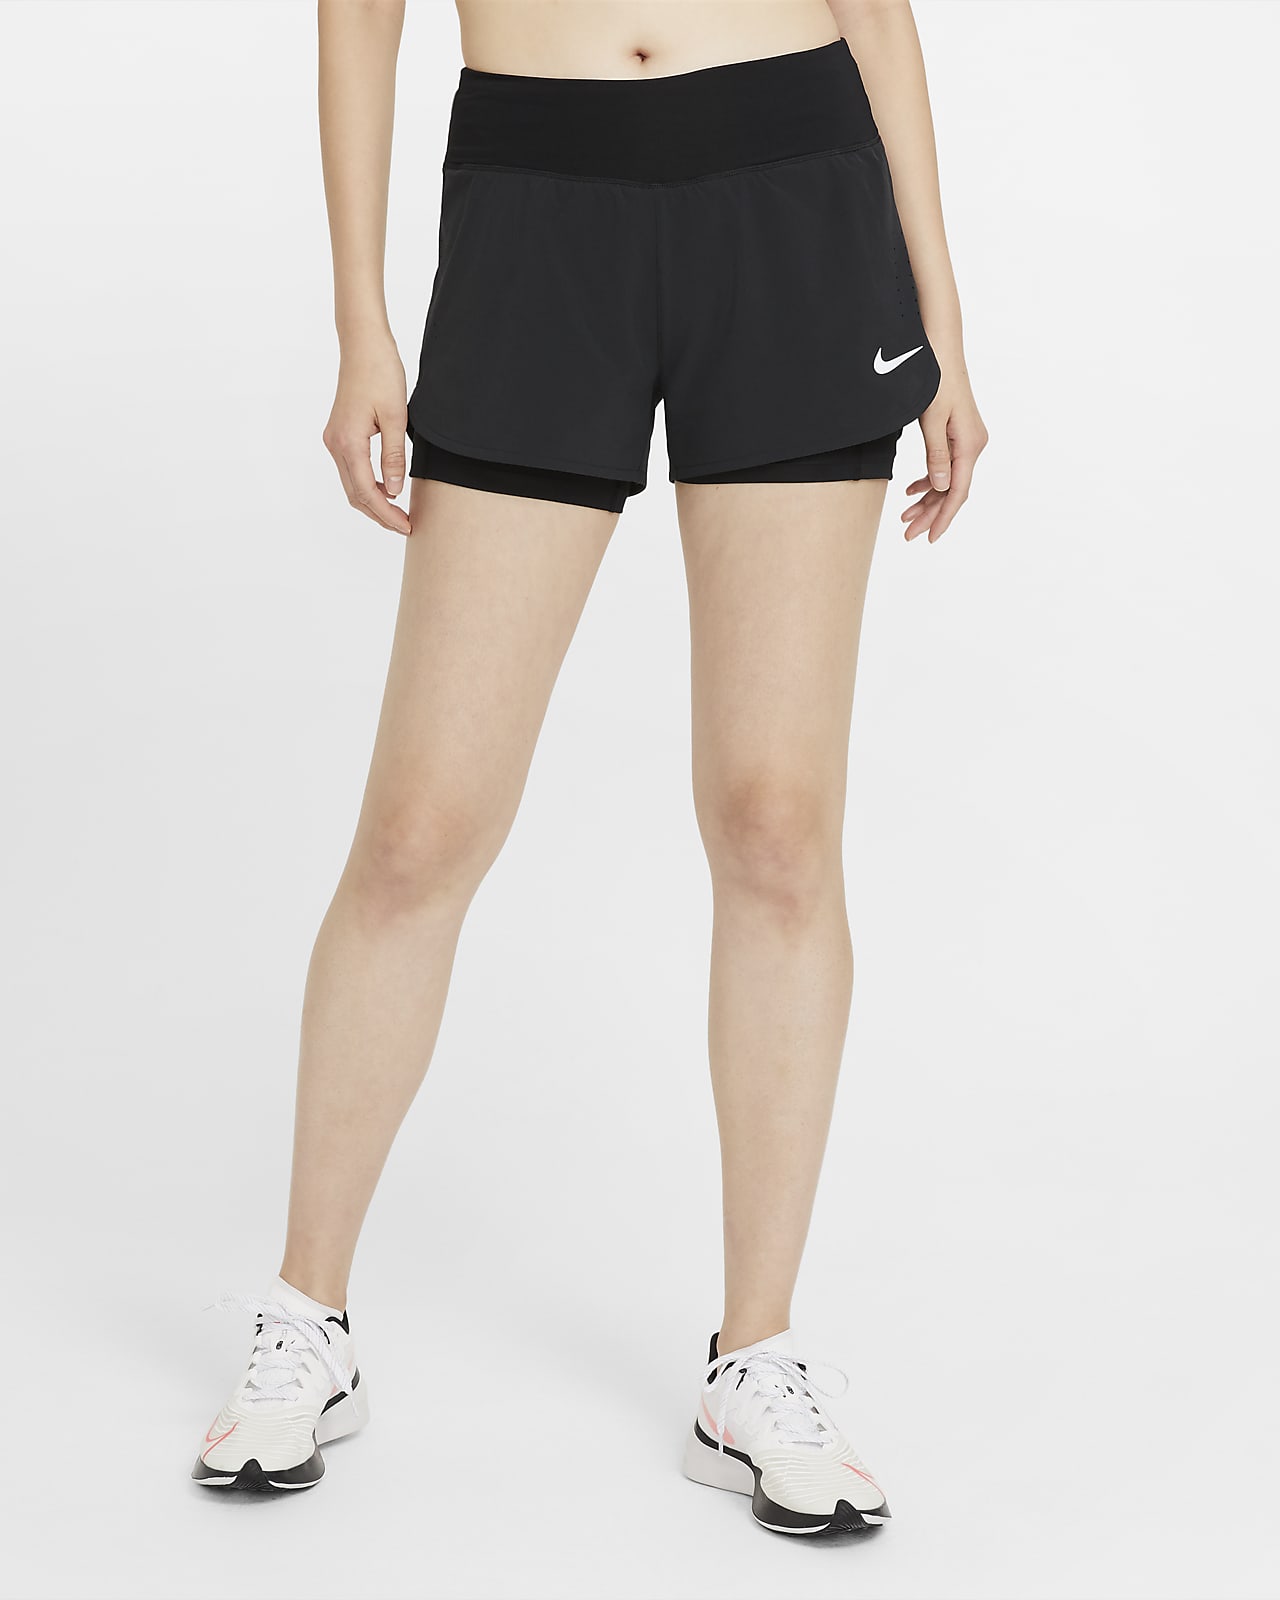 Γυναικείο σορτς για τρέξιμο δύο σε ένα Nike Eclipse